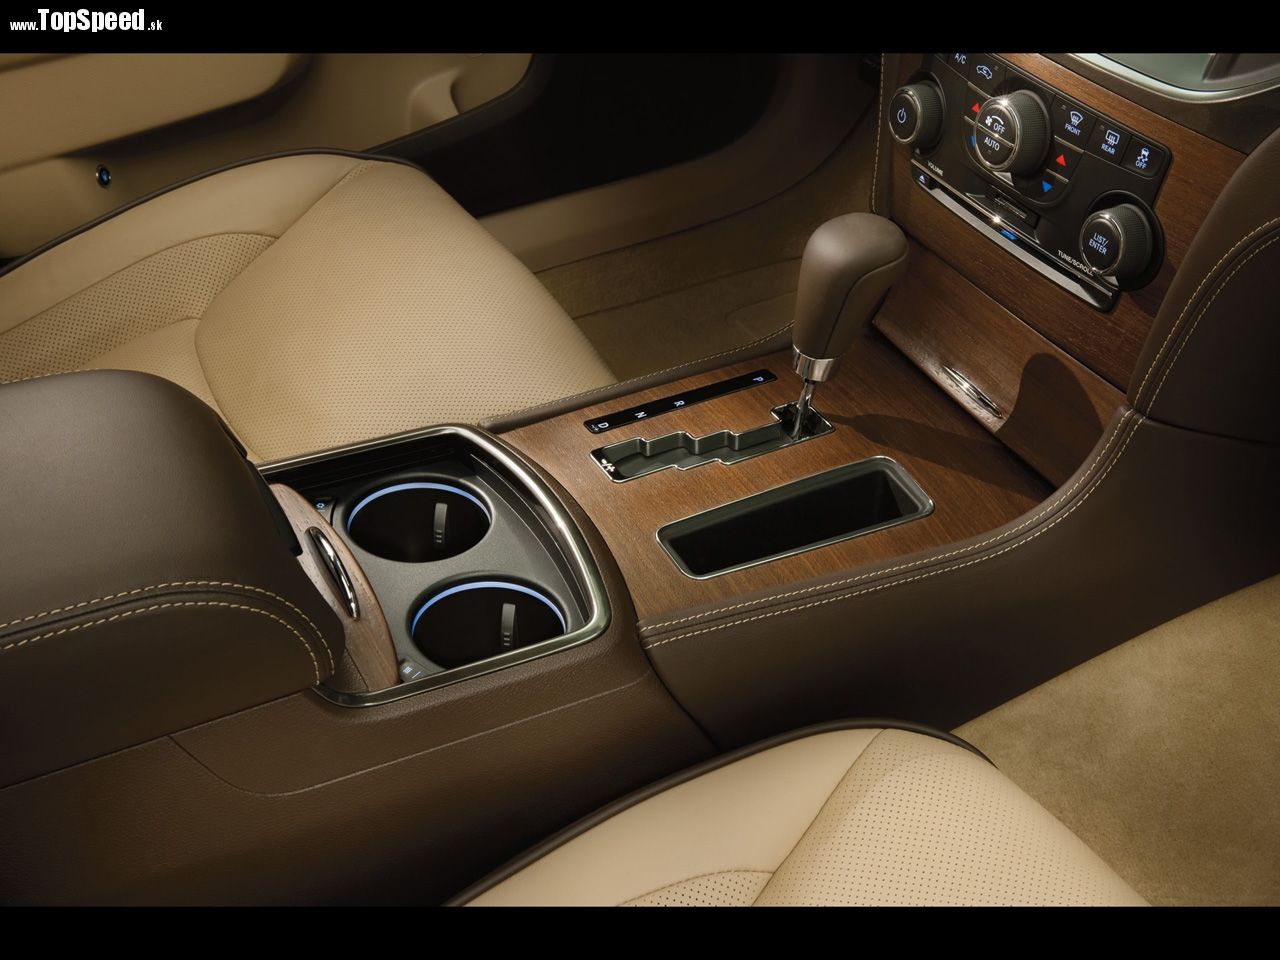 Koža, dvero, koža, drevo, koža, drevo, vyspelá technika a výkonné motory. Taký je stručný opis Chryslera 300 Luxury Series.